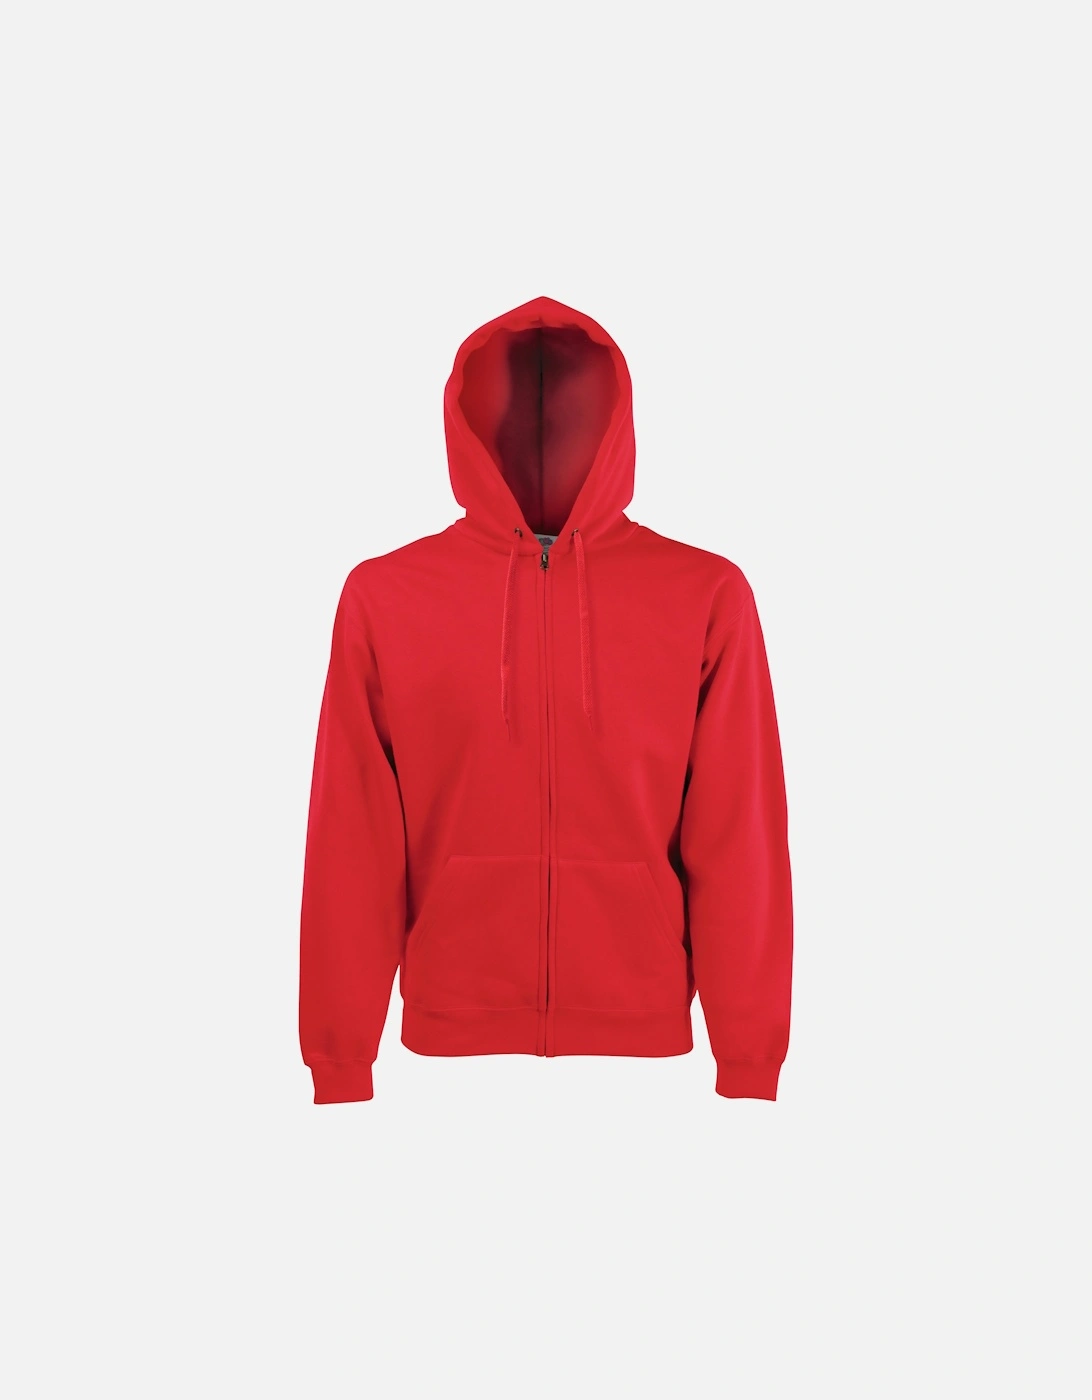 Mens Premium 70/30 Hooded Zip-Up Sweatshirt / Hoodie, 3 of 2